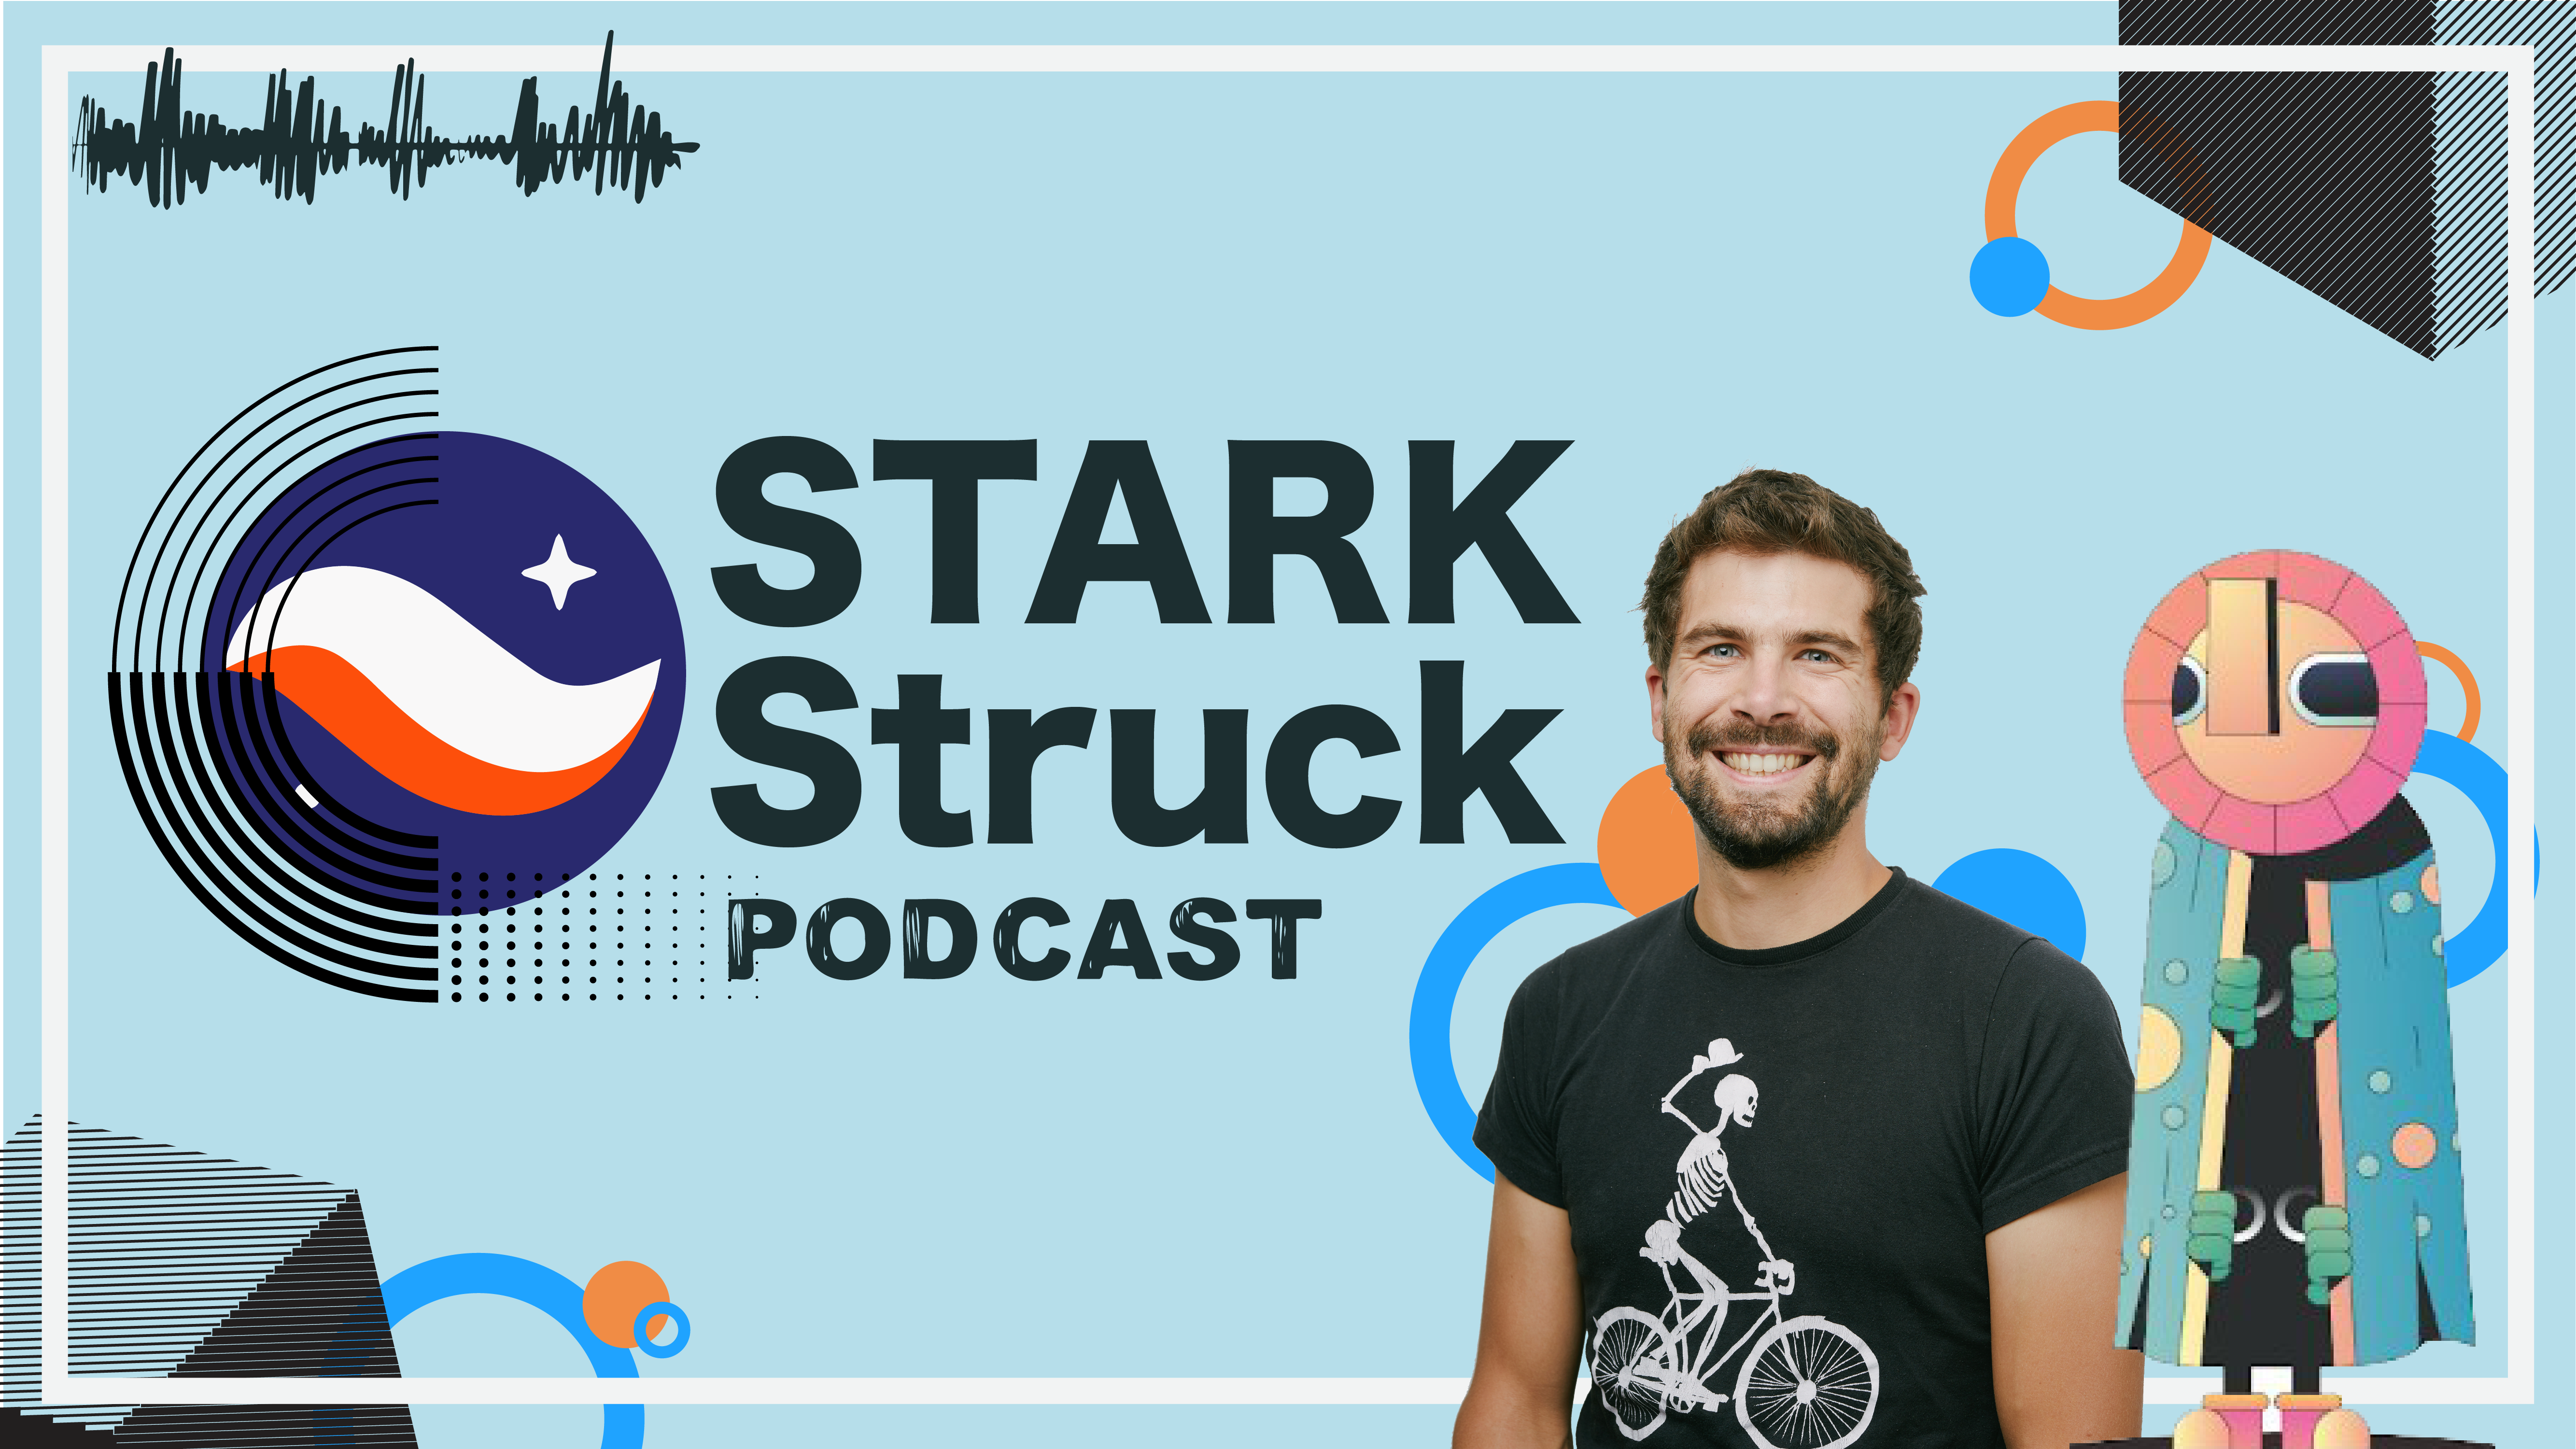 StarkNet Struck Podcast | Episode 1 | Henri Lieutaud & GuiltyGyoza